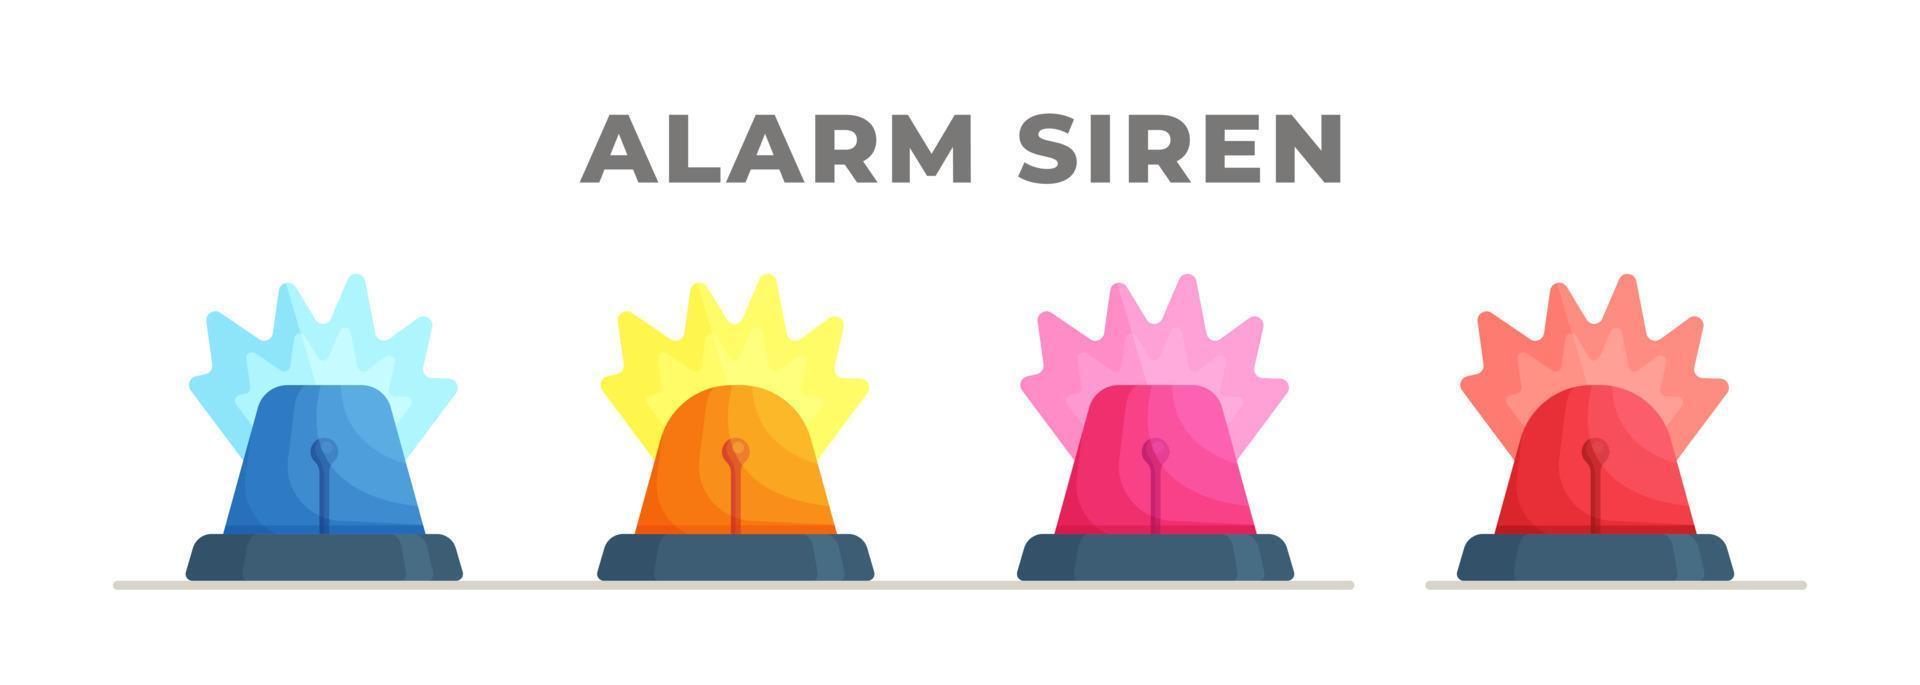 Reihe von Feuersirenen in verschiedenen Farben. Vektorillustration von vier bunten Sirenen für Feuerwehrleute, Trauer, Luftalarme und mehr. vektor